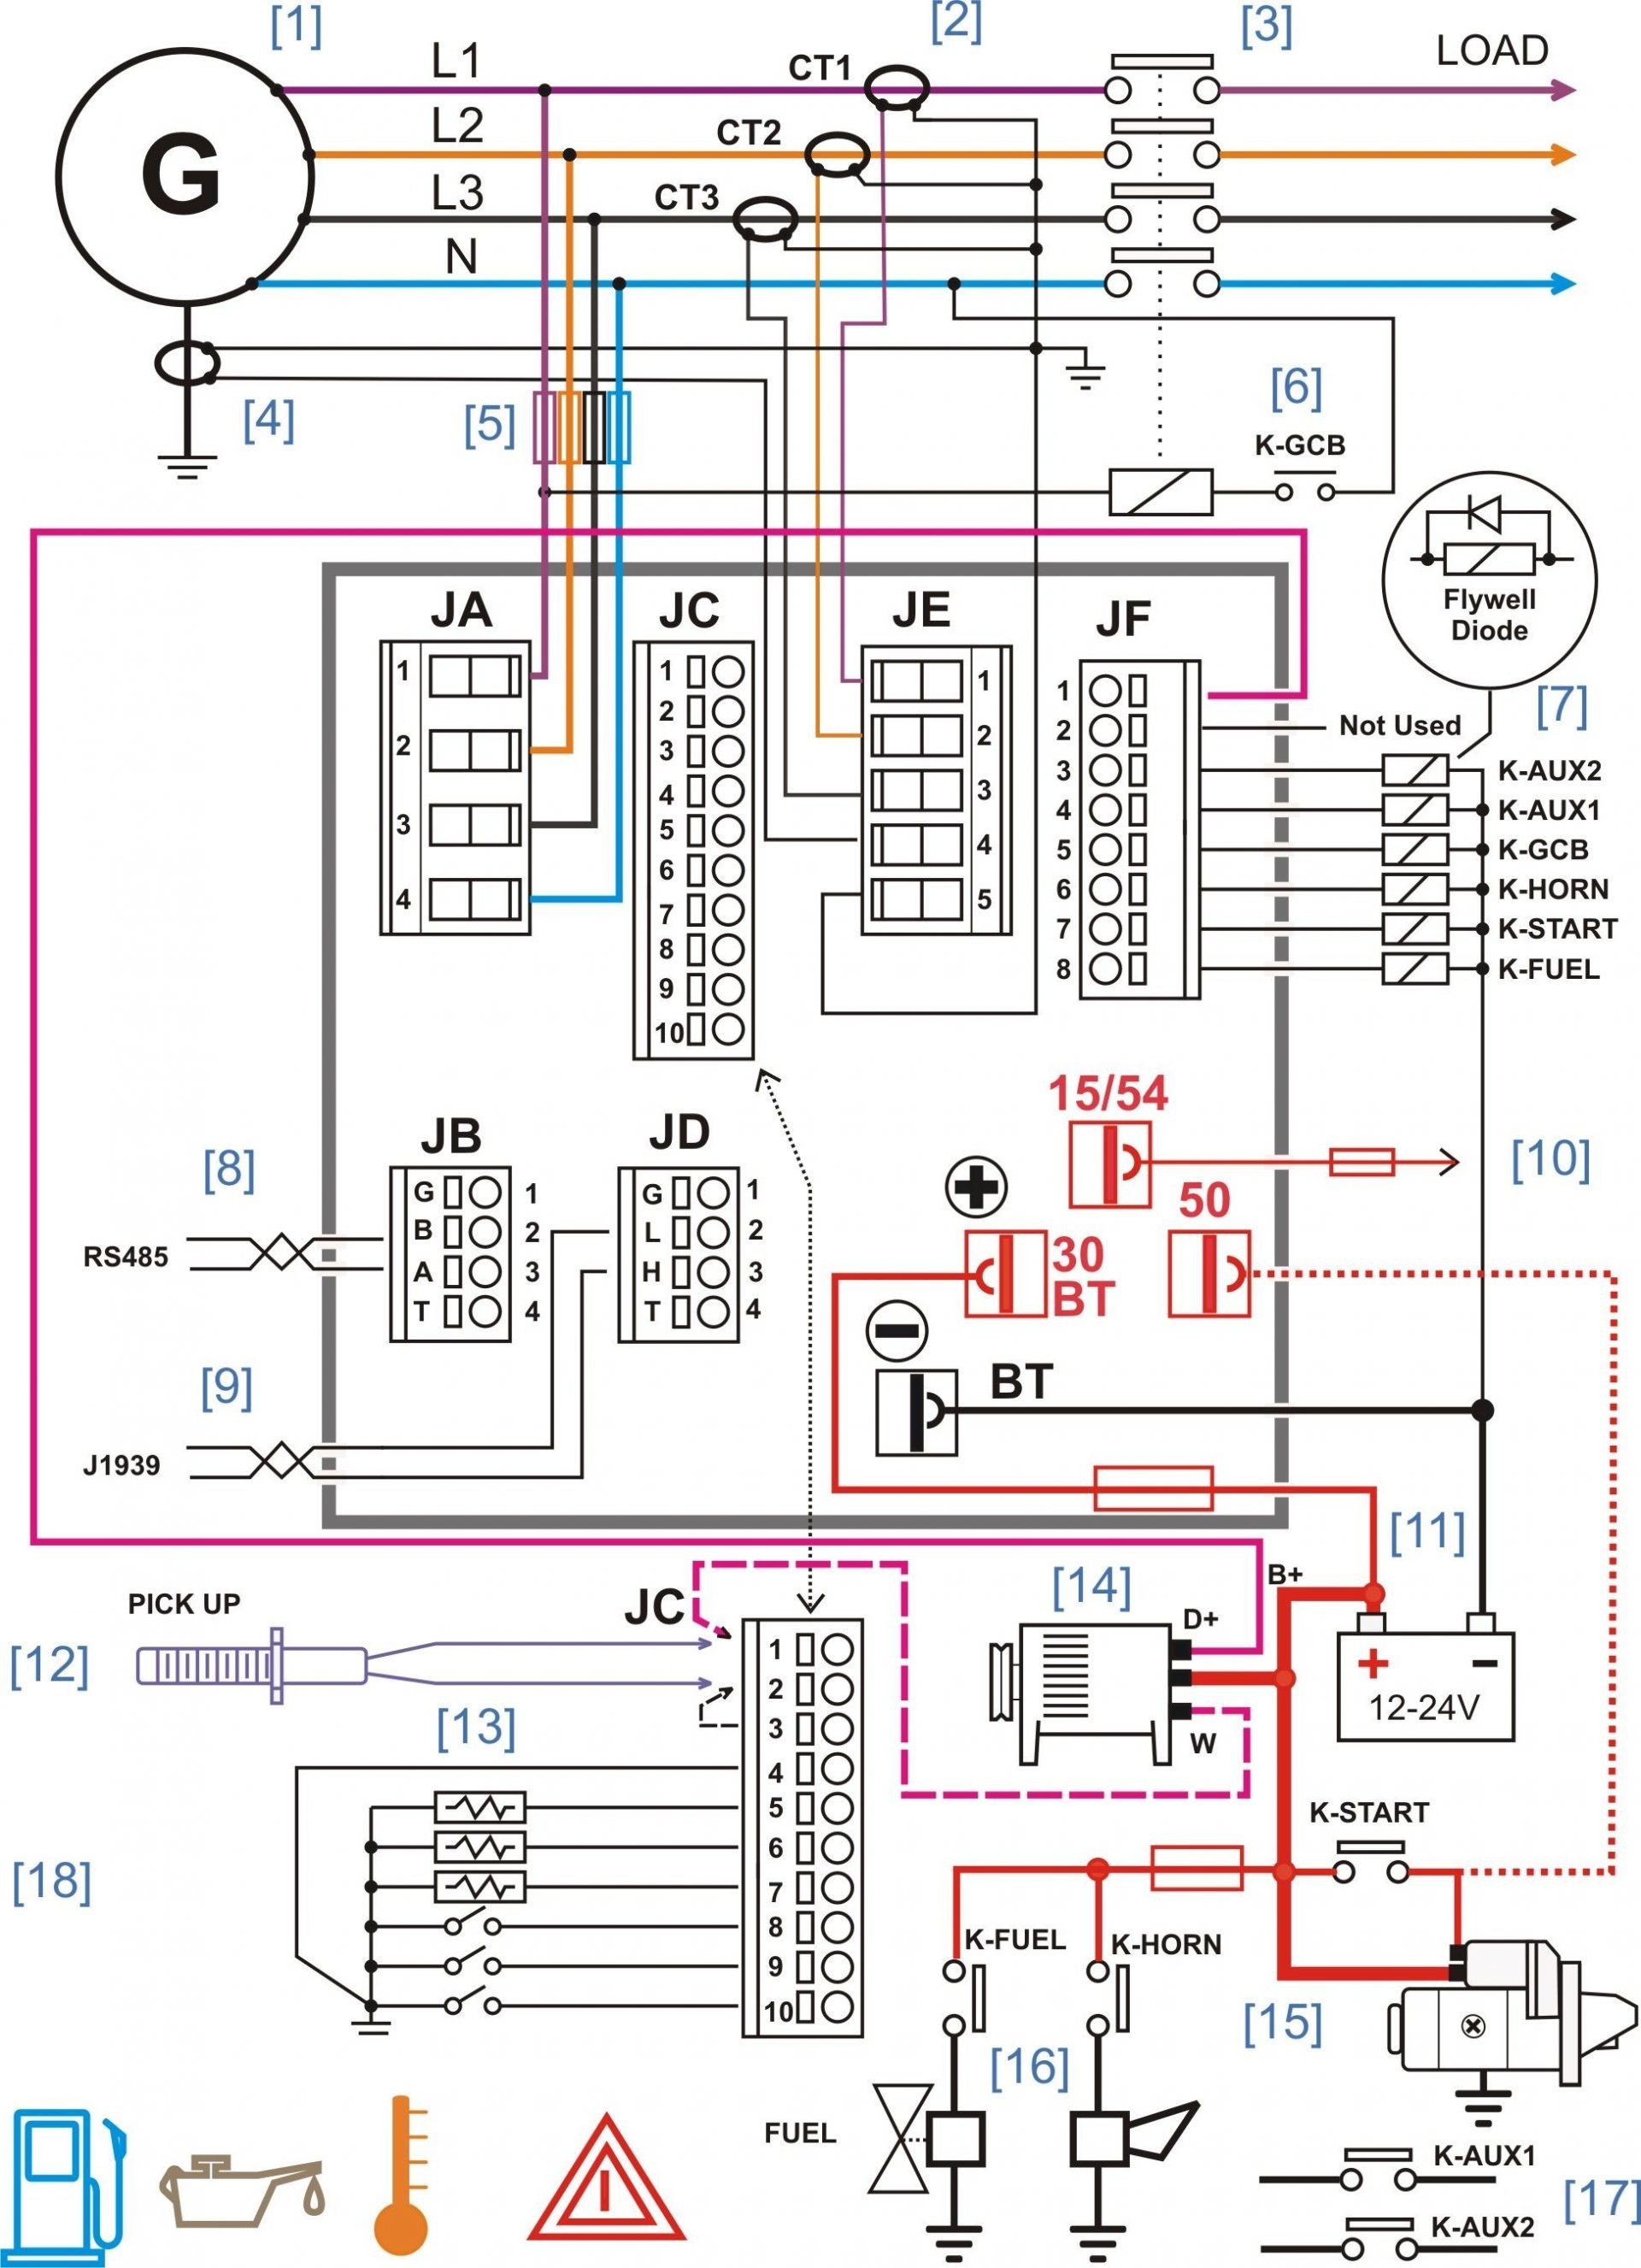 Kib K21 Monitor Panel Wiring Best Of | Wiring Diagram Image